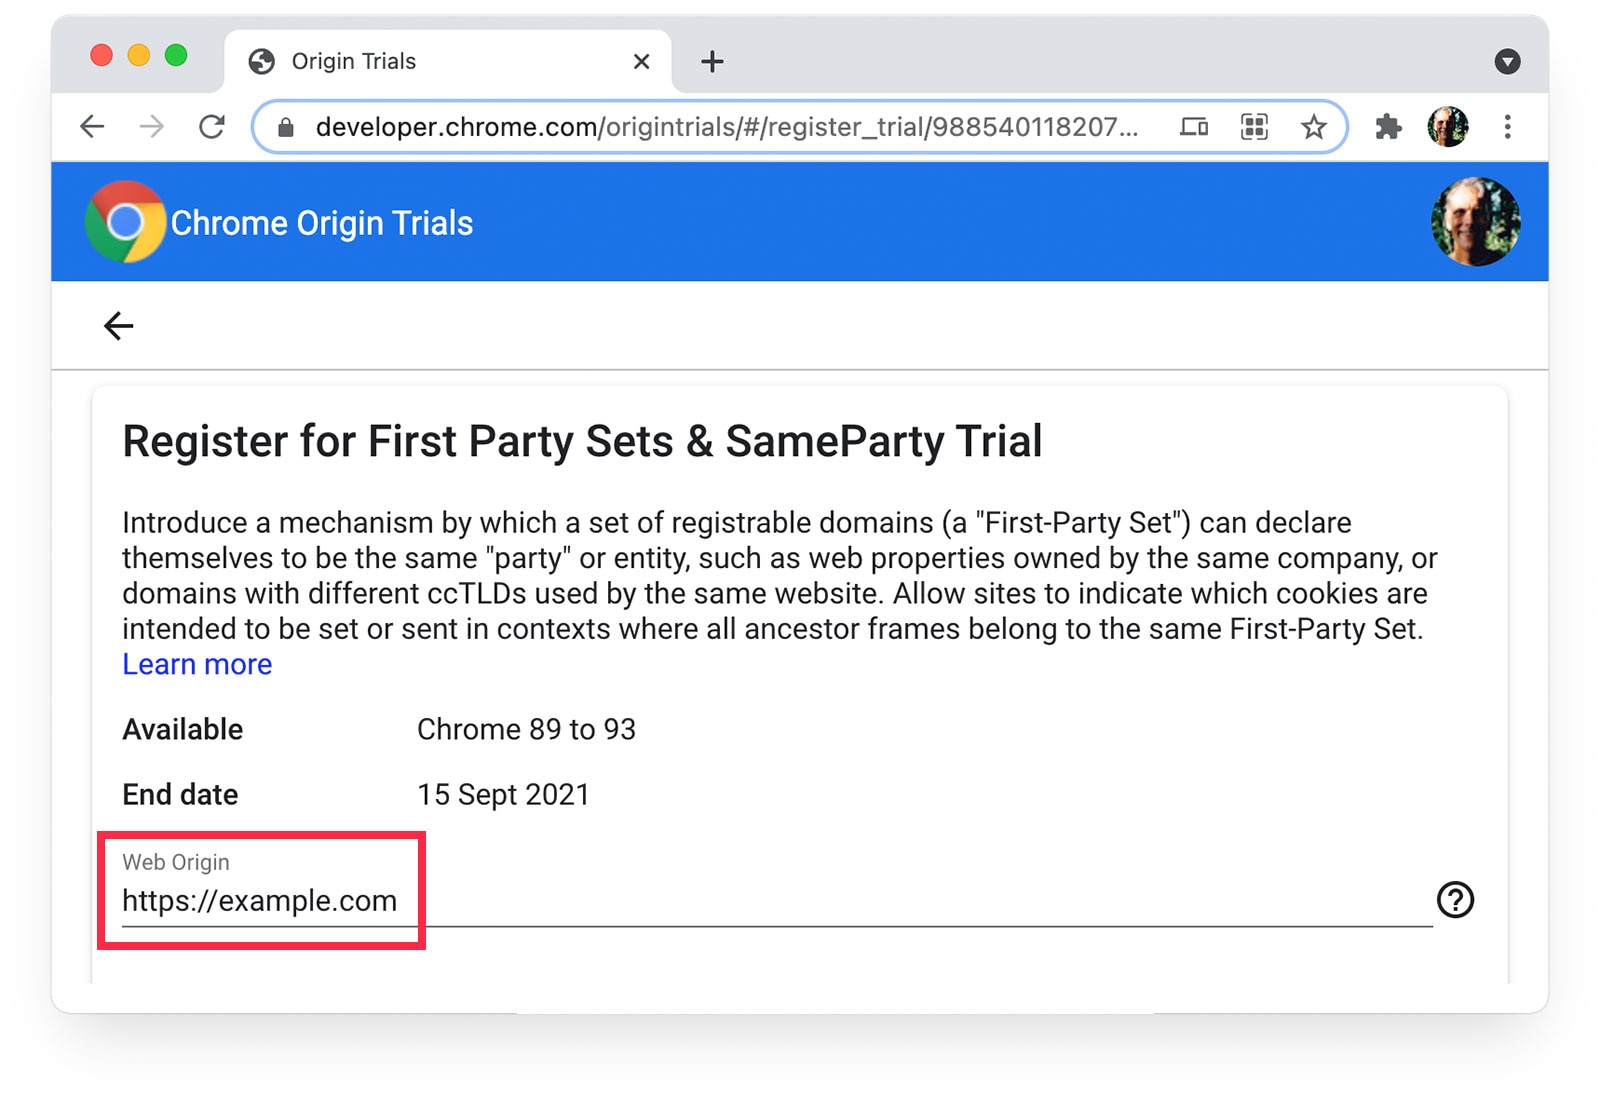 ช่วงทดลองใช้ Chrome จากต้นทาง 
หน้าเว็บที่แสดง https://example.com ที่เลือกไว้เป็นต้นทางเว็บ